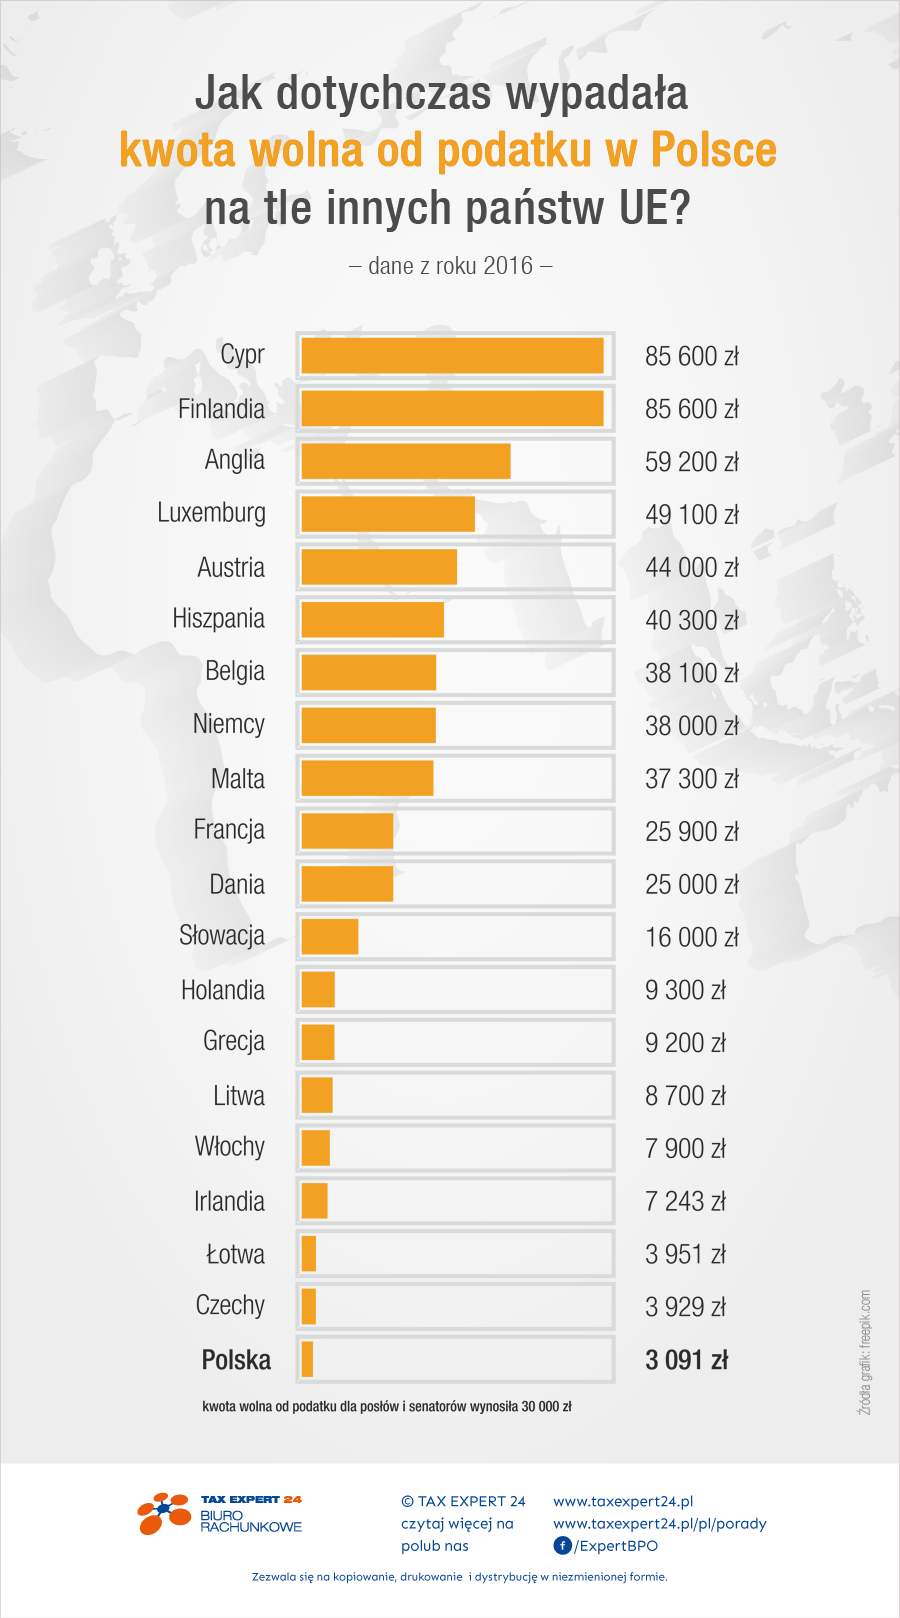 Jak dotychczas wypadała kwota wolna od podatku w Polsce na tle innych krajów UE